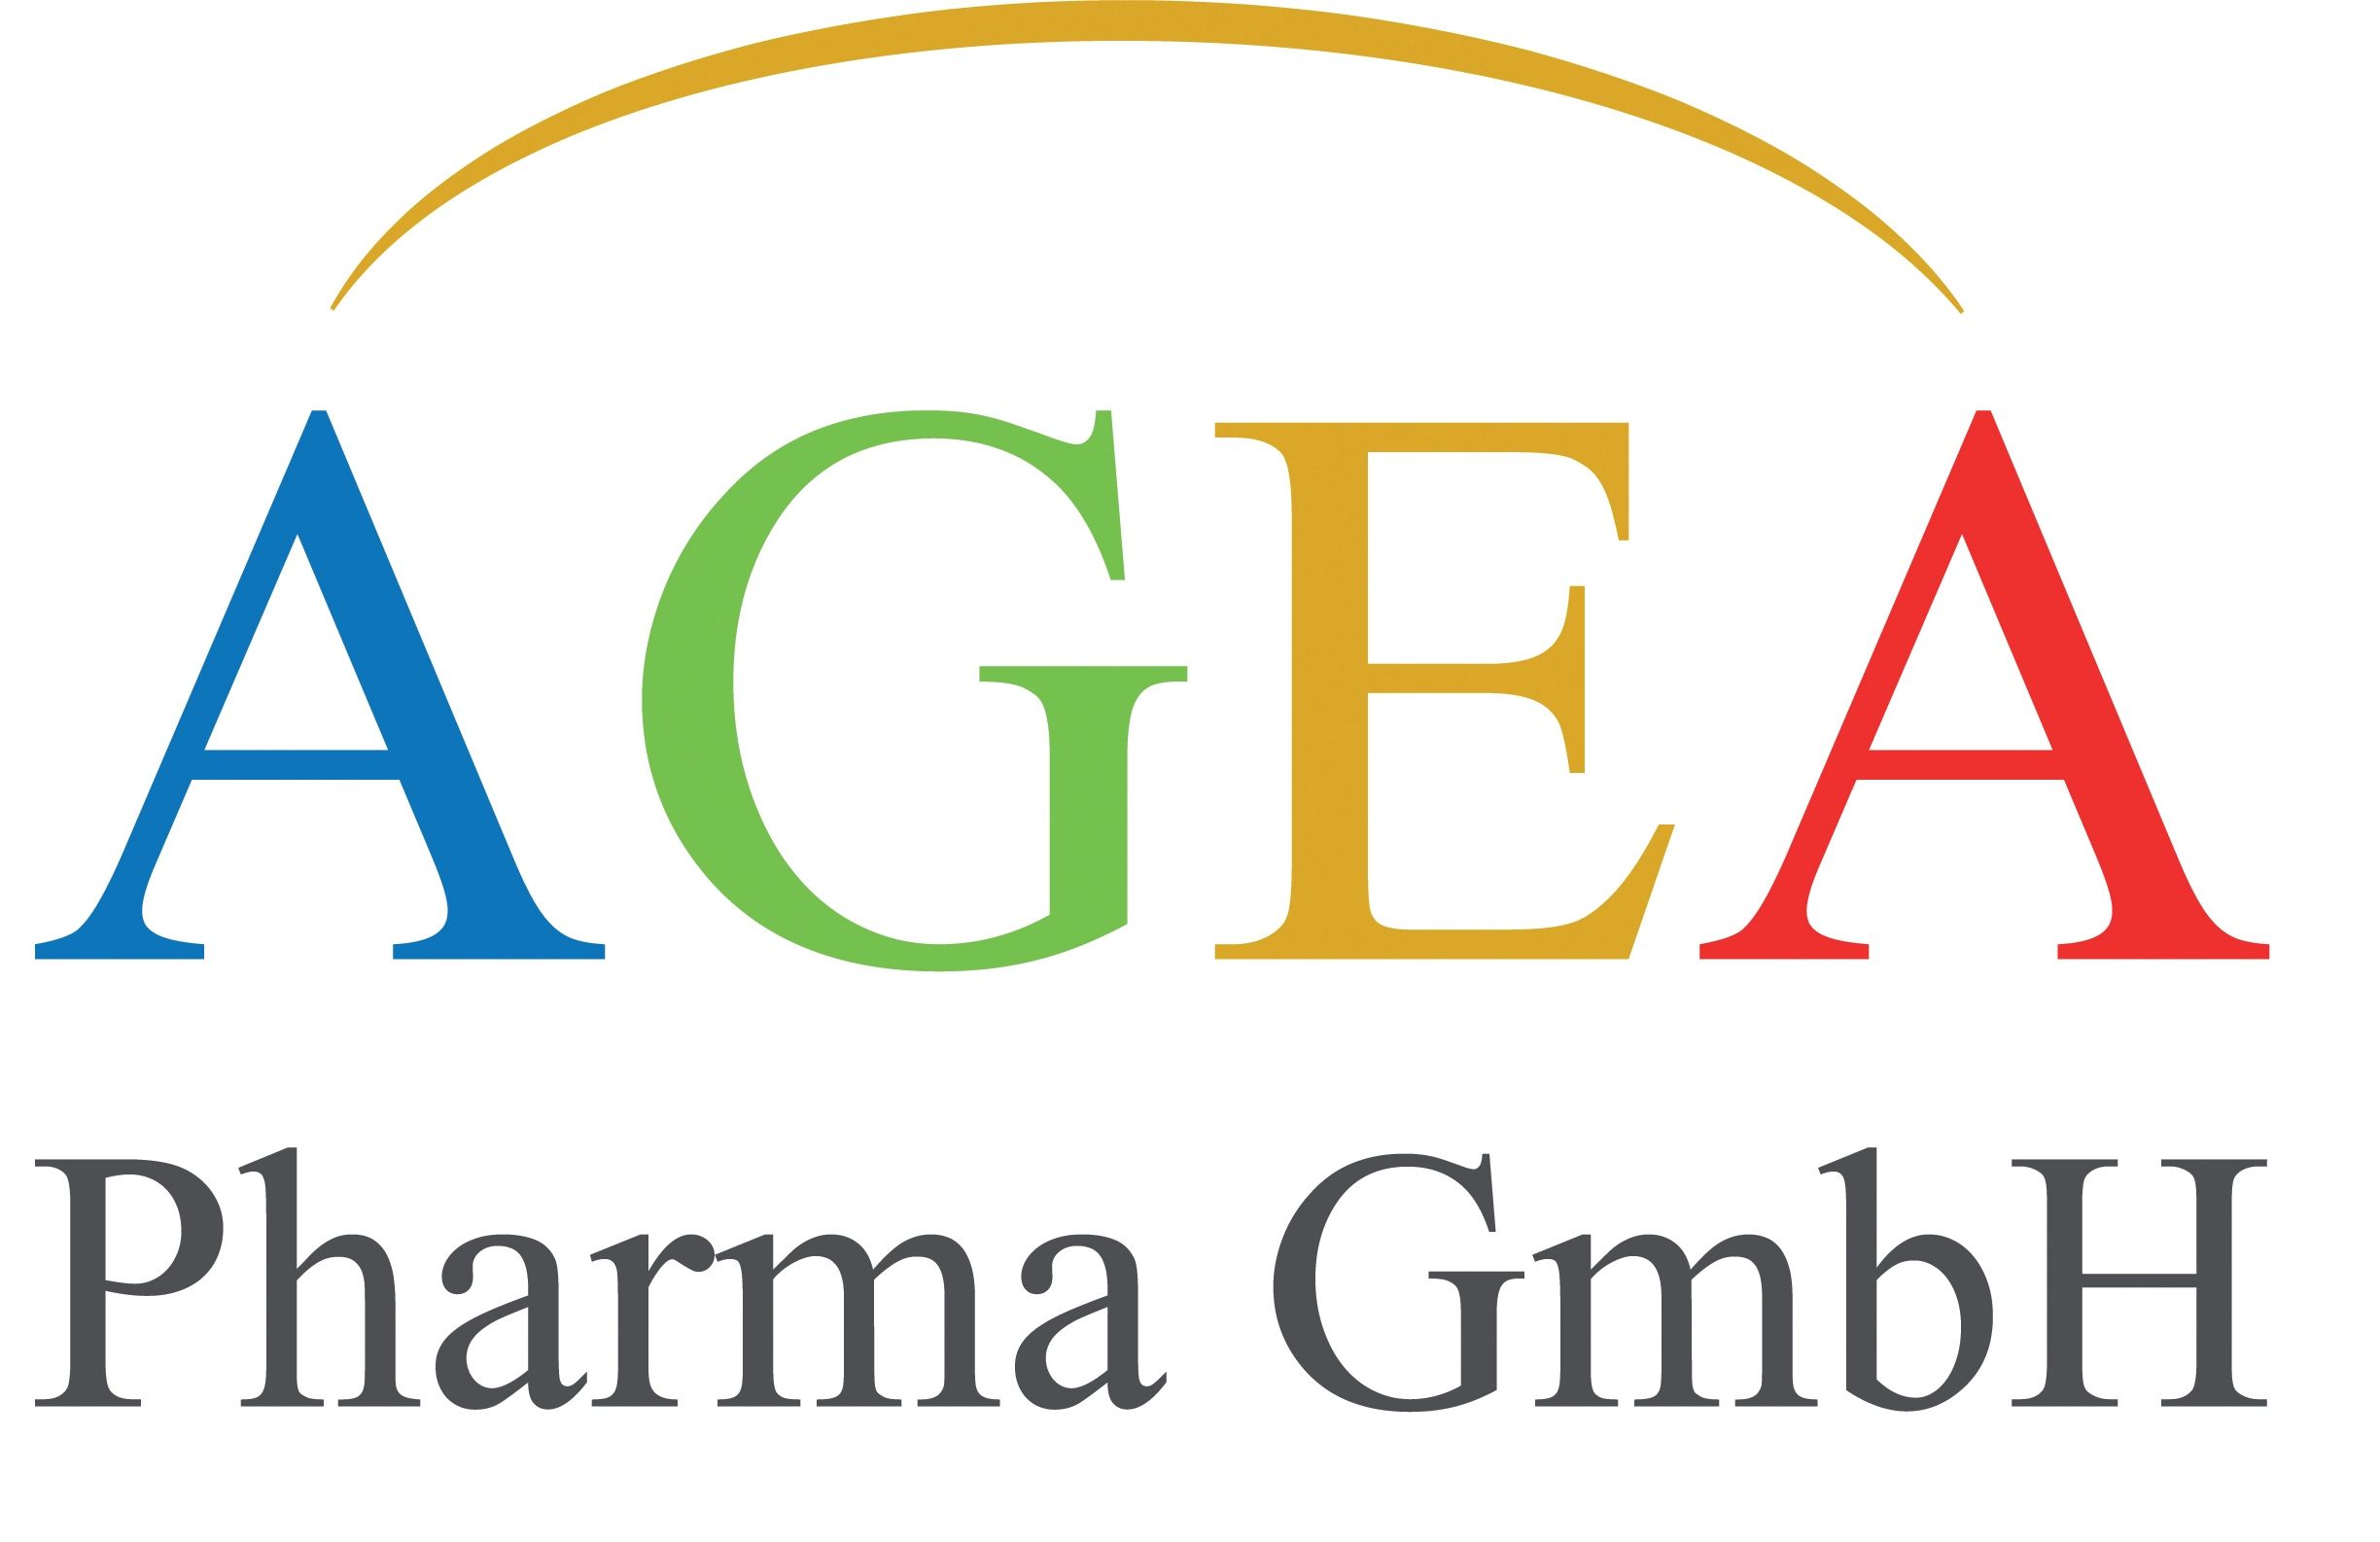 AGEA Pharma GmbH